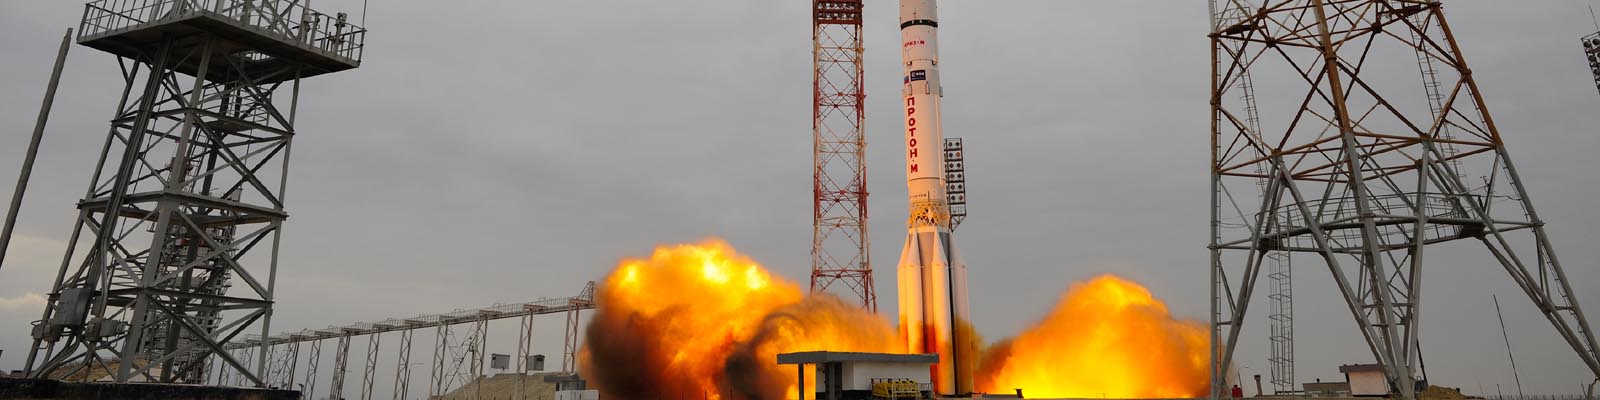 Lancement de la sonde Exomars 2016 par la fusée Proton